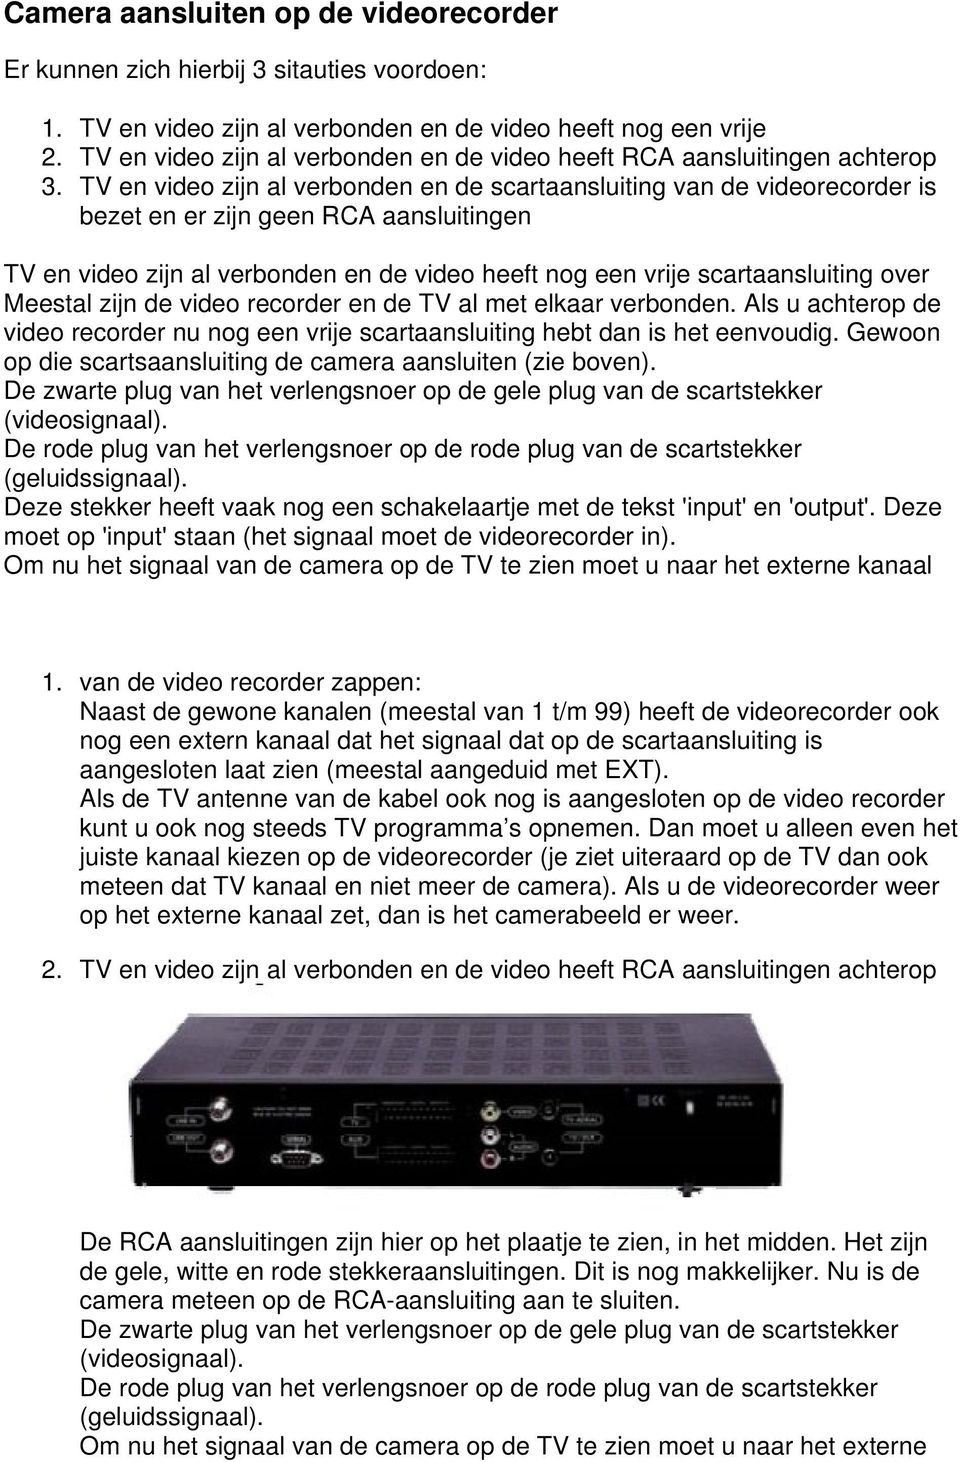 TV en video zijn al verbonden en de scartaansluiting van de videorecorder is bezet en er zijn geen RCA aansluitingen TV en video zijn al verbonden en de video heeft nog een vrije scartaansluiting